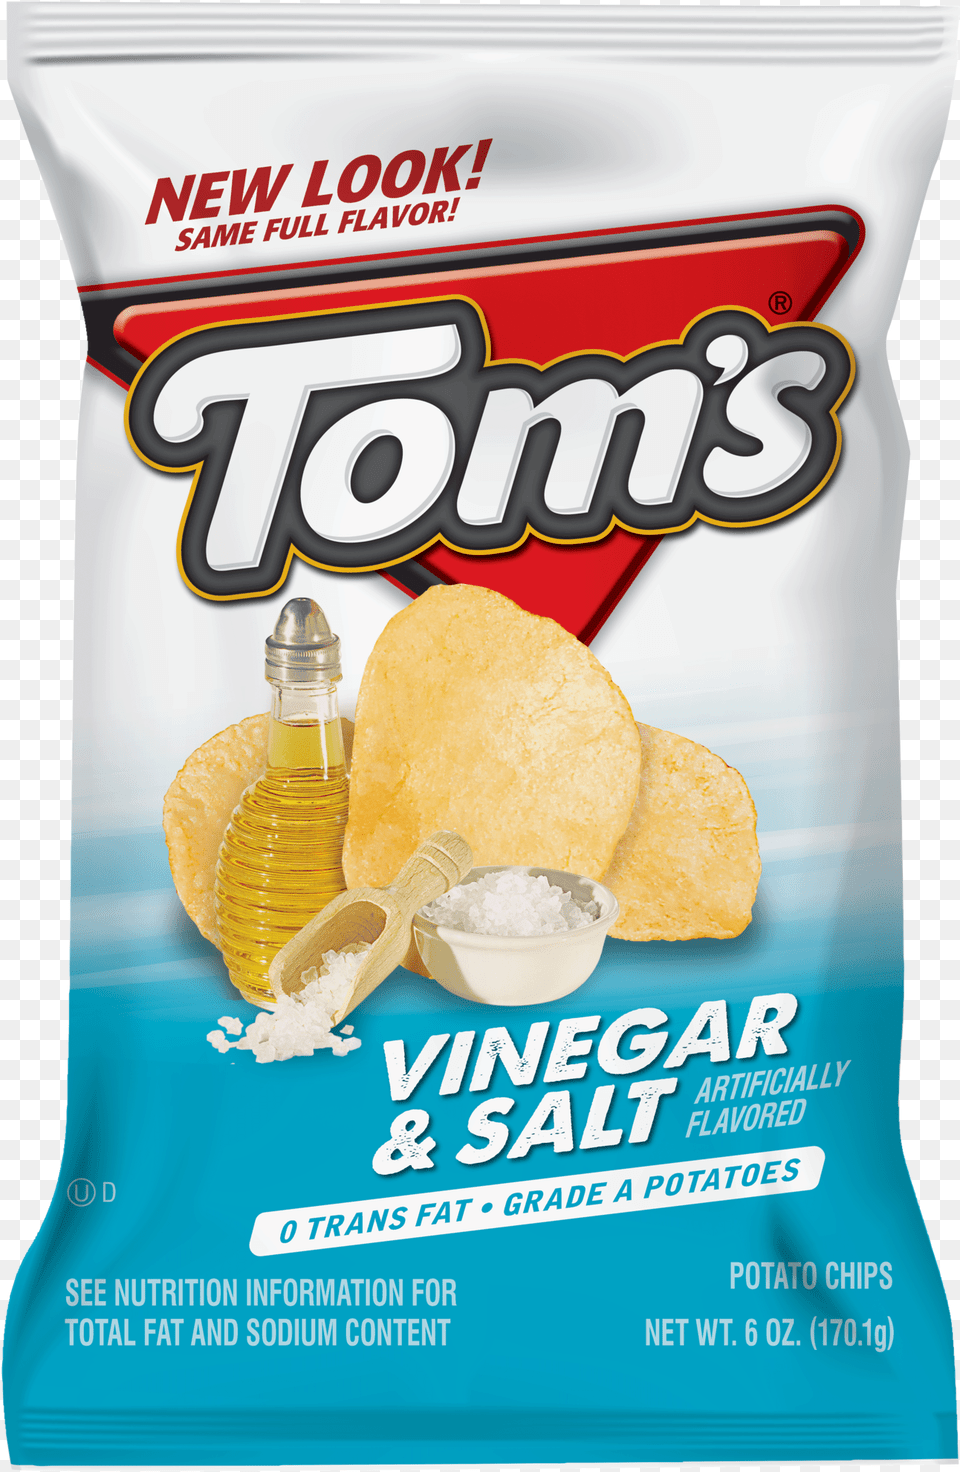 Vinegar Amp Salt Potato Chips Tom39s Vinegar And Salt, Bread, Food, Bottle, Brush Png Image